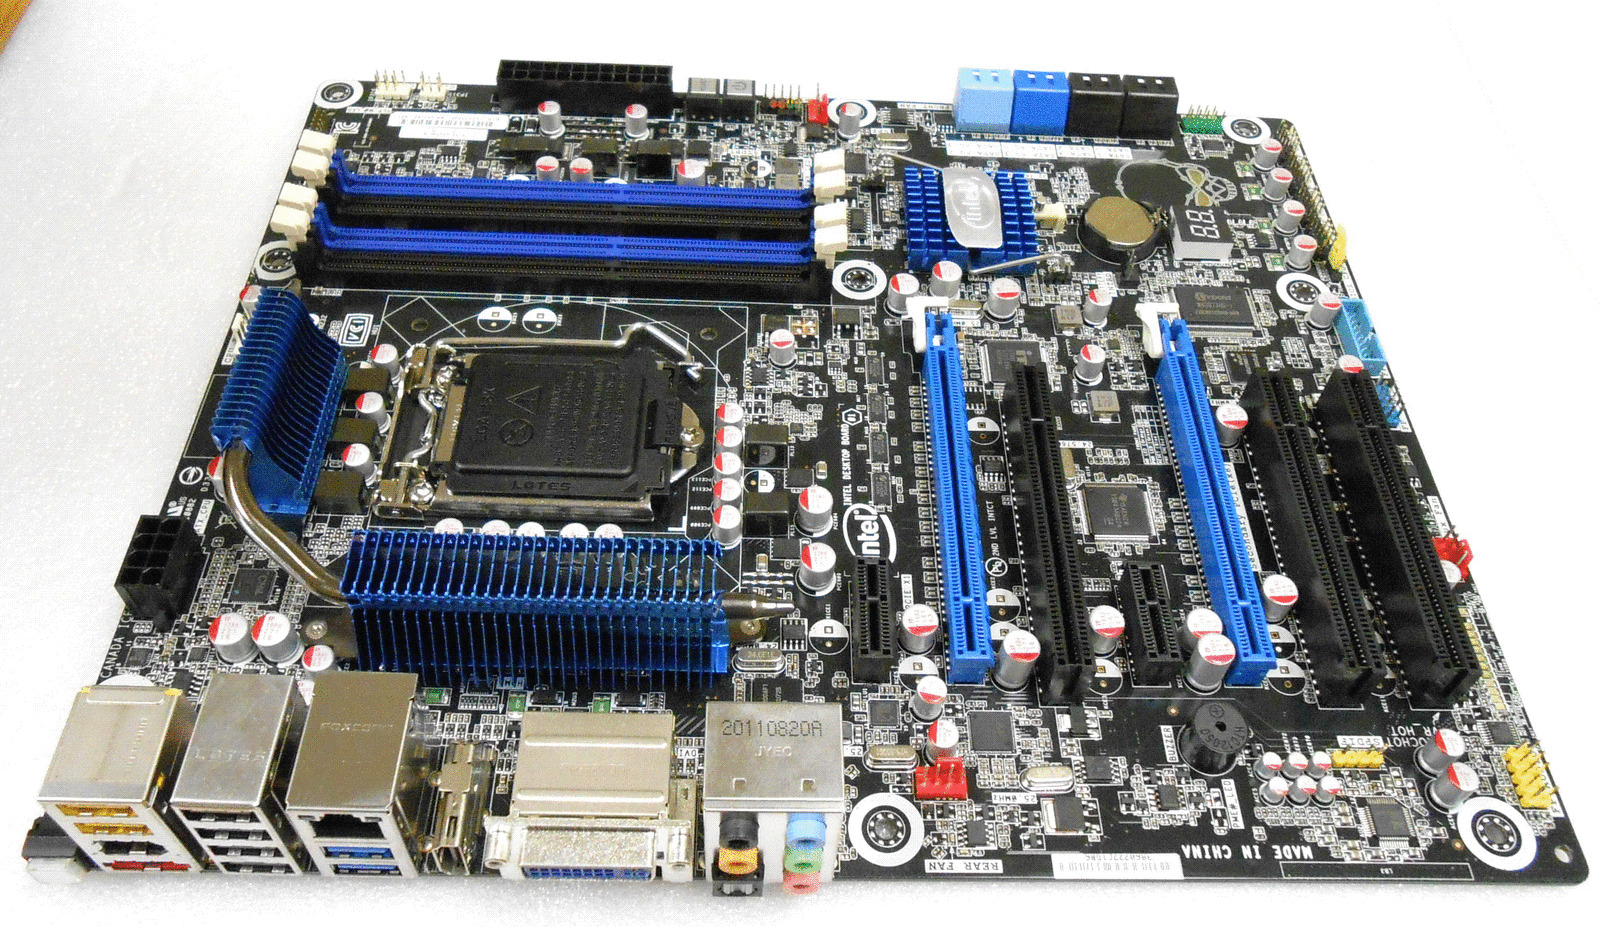 Intel BLKDZ68BC DZ68BC LGA1155 ATX DDR3 New Bulk Board w Accessories